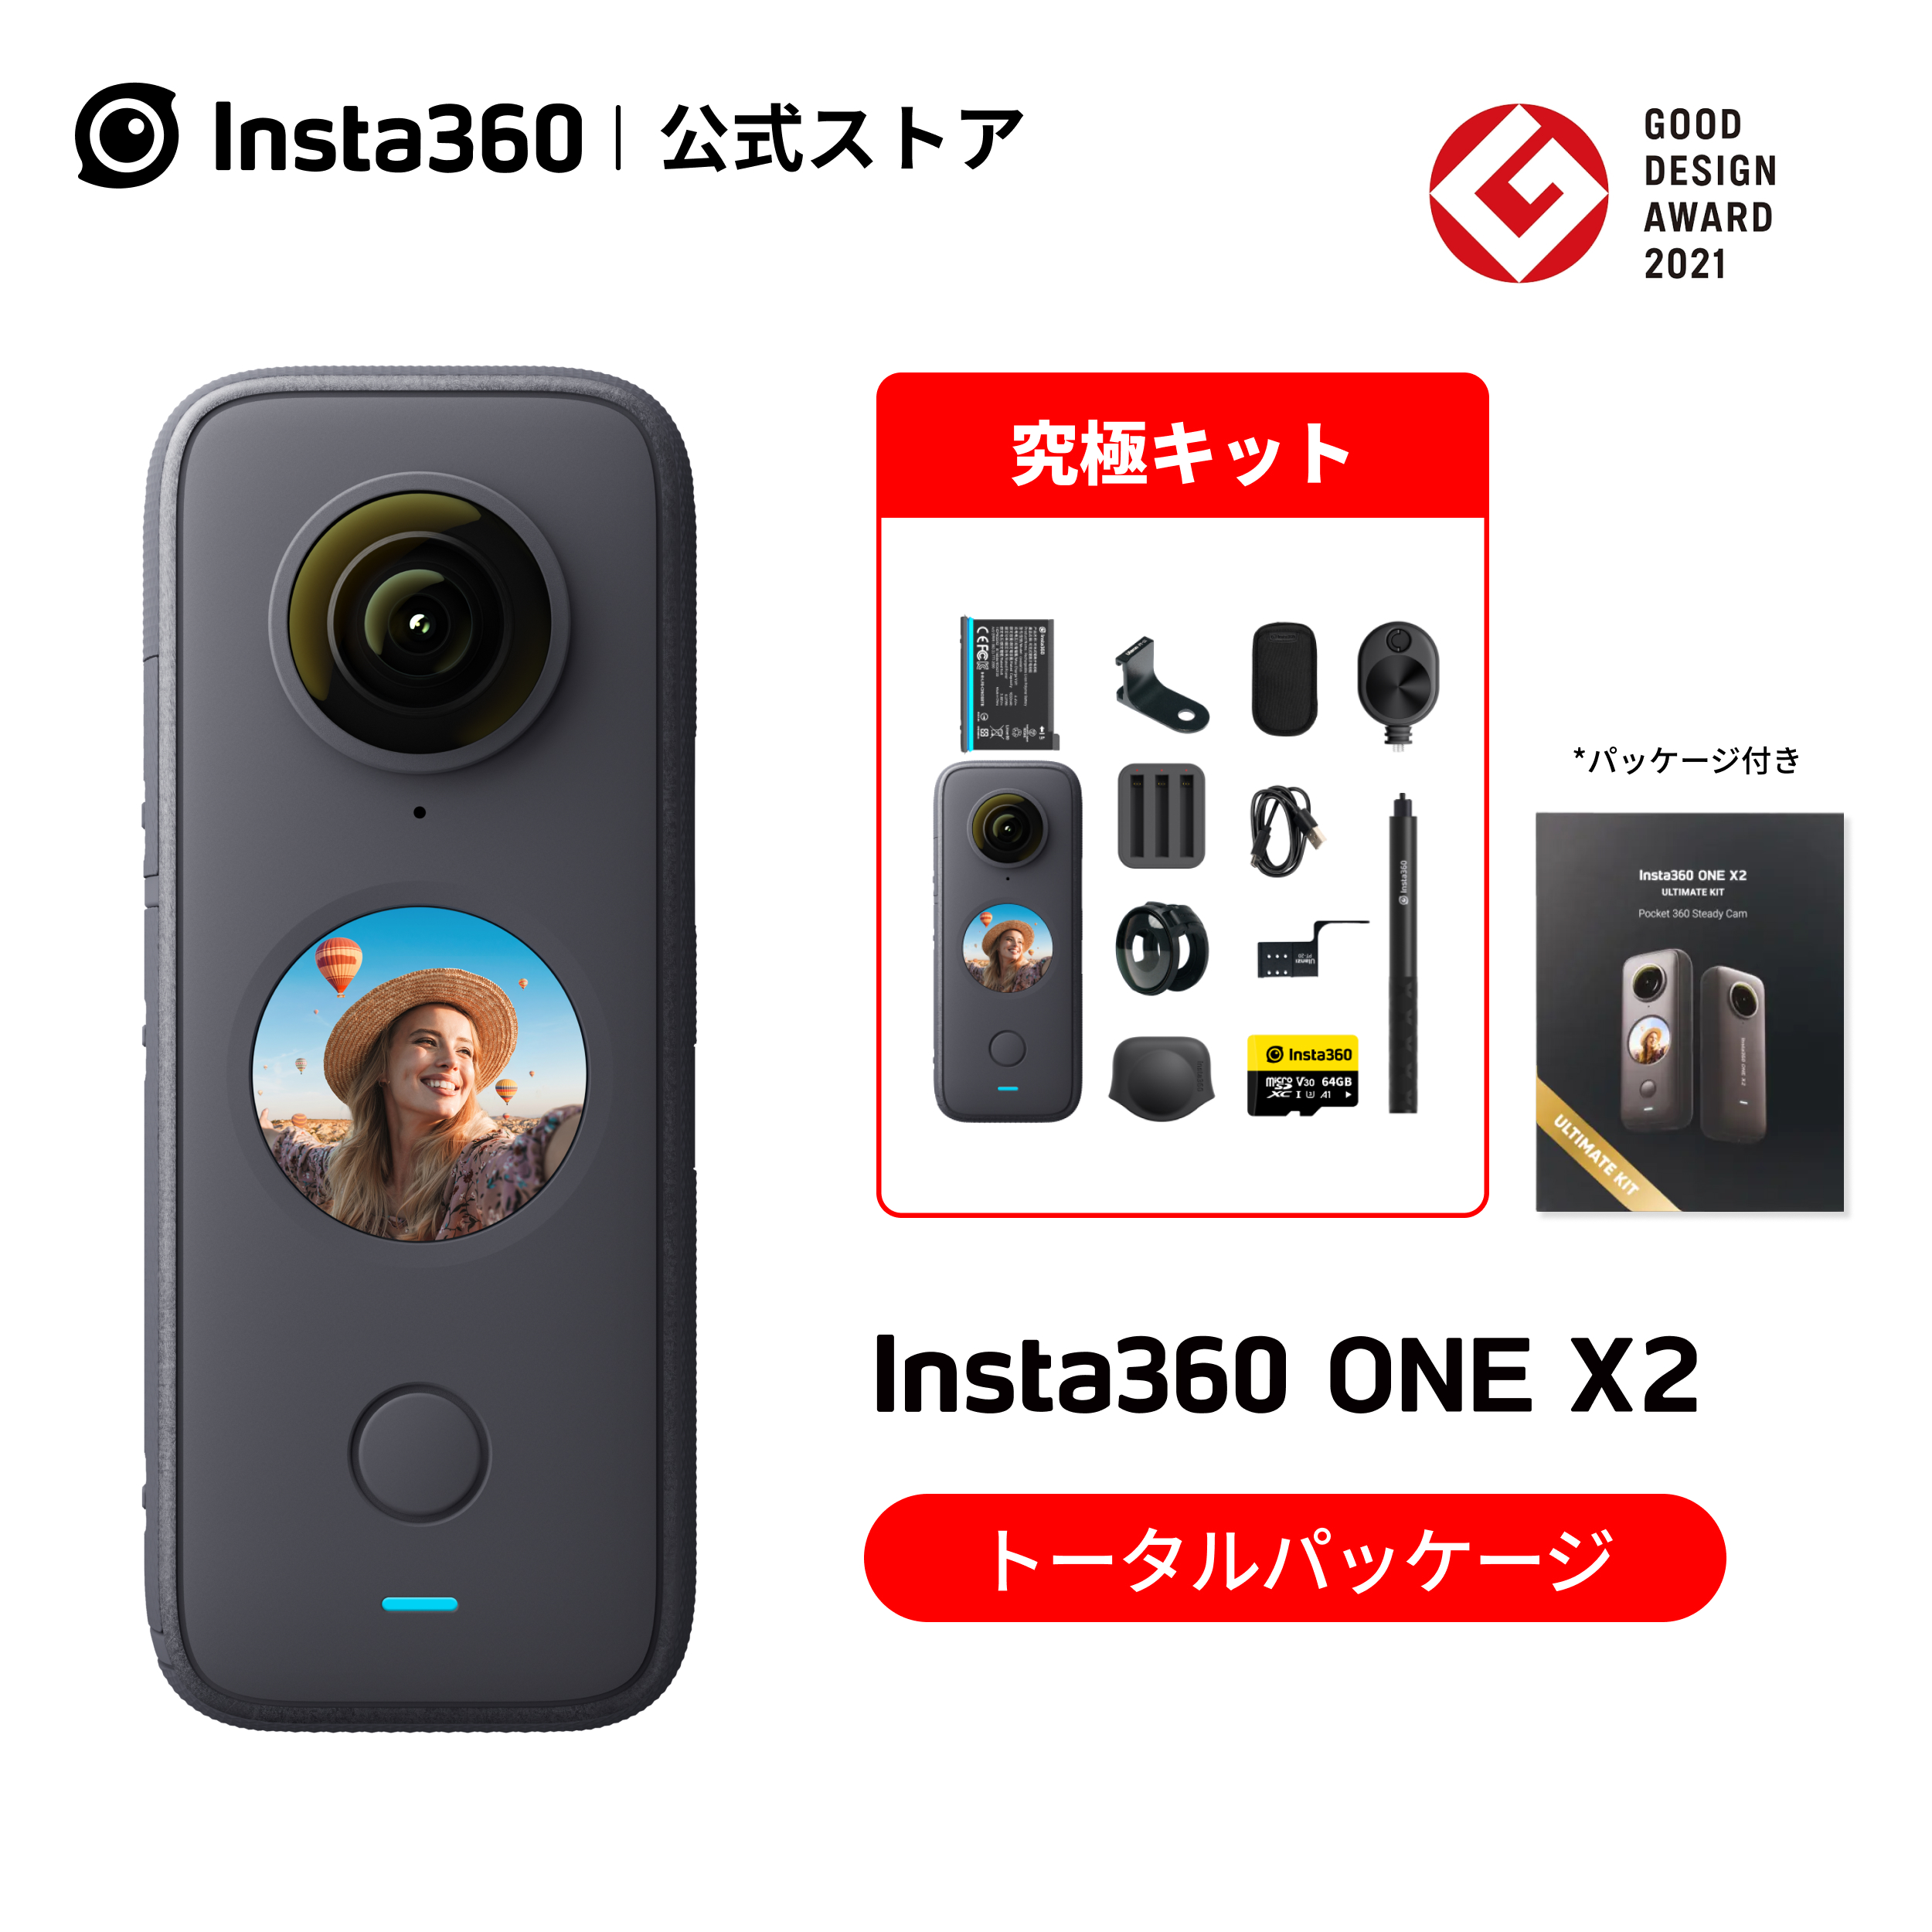   インスタ360『Insta360 X3 通常版』CINSAAQ B ビデオカメラ 1週間保証 